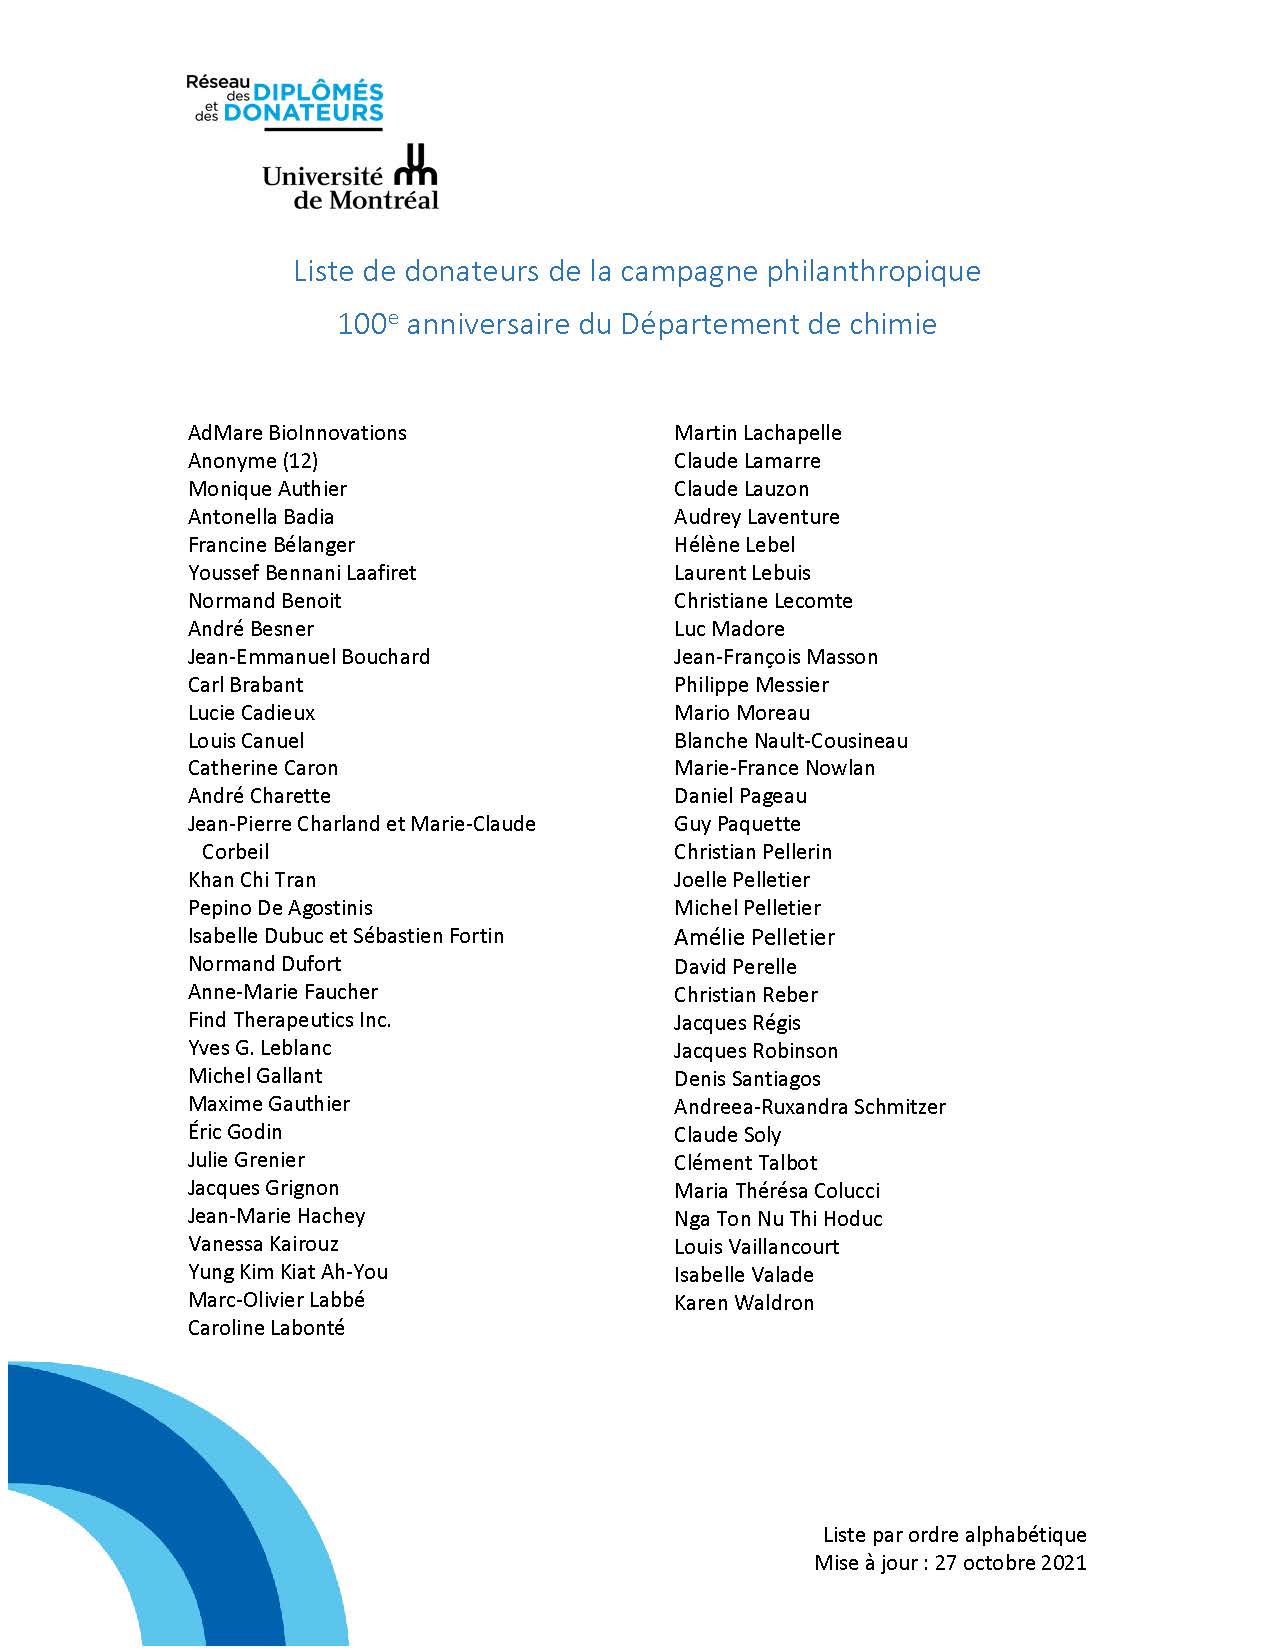 liste de donateurs de la campagne philantropique 100e anniversaire du Département de chimie